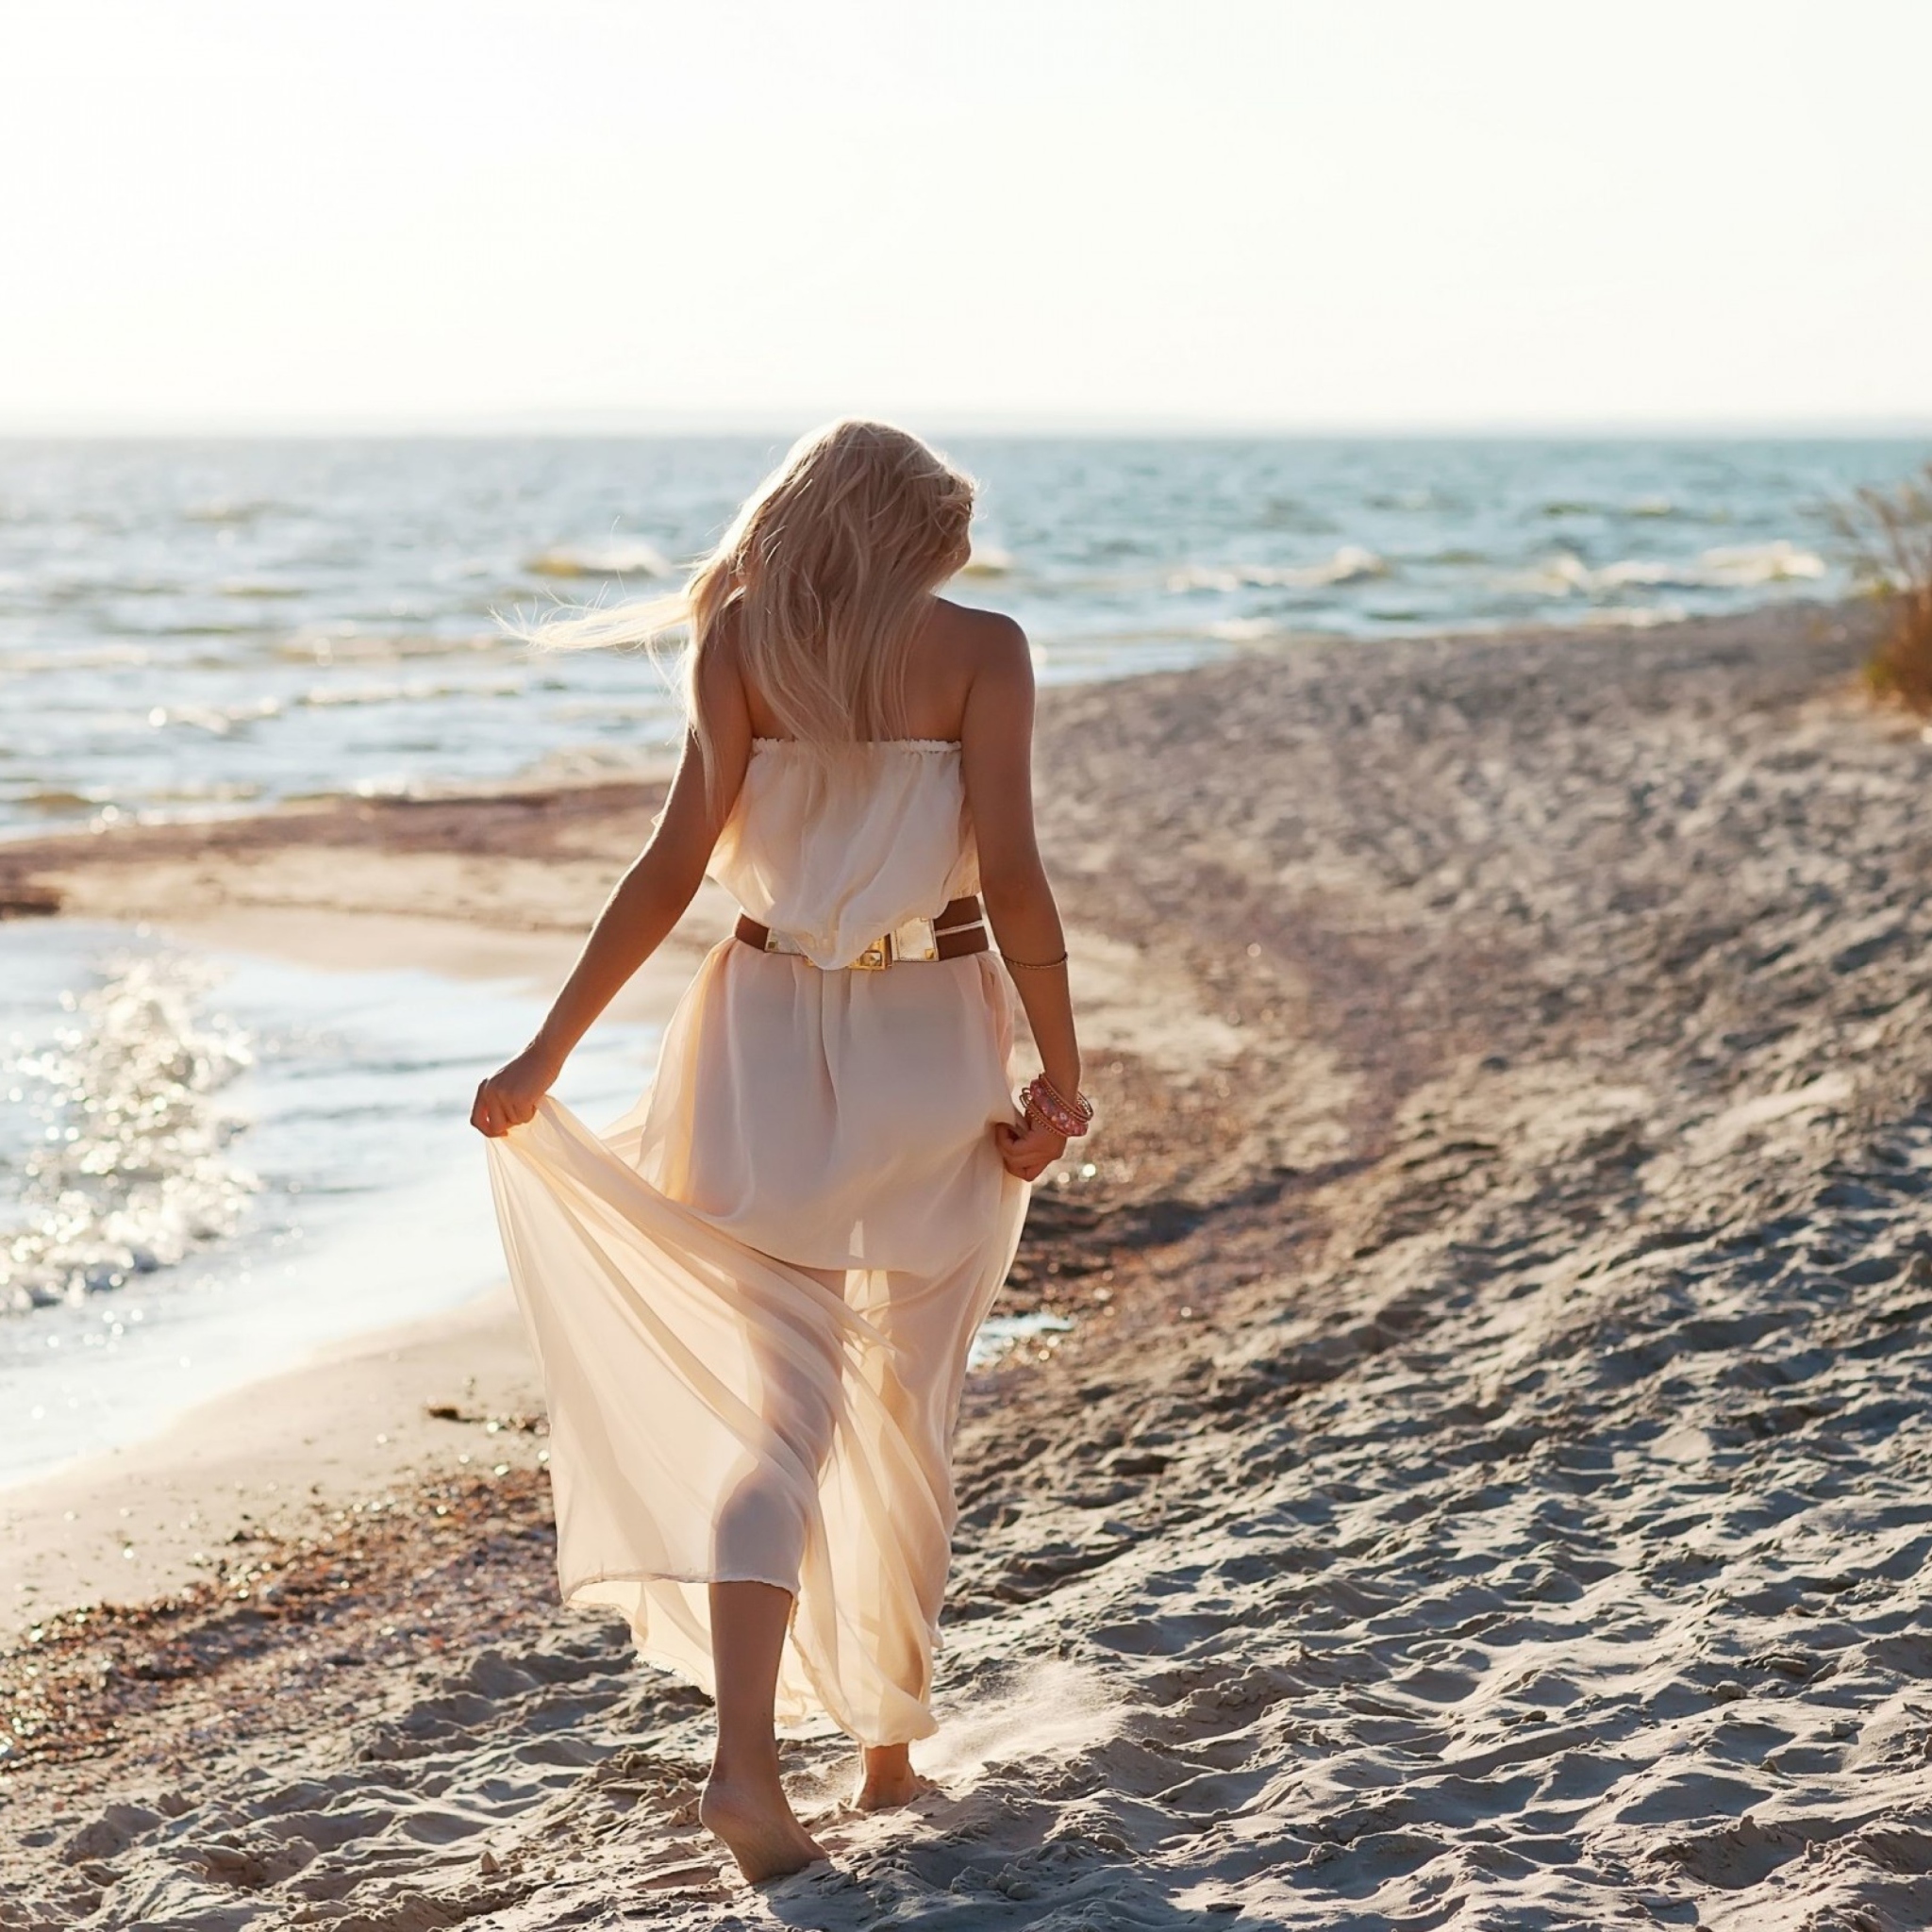 Girl In White Dress On Beach wallpaper 2048x2048